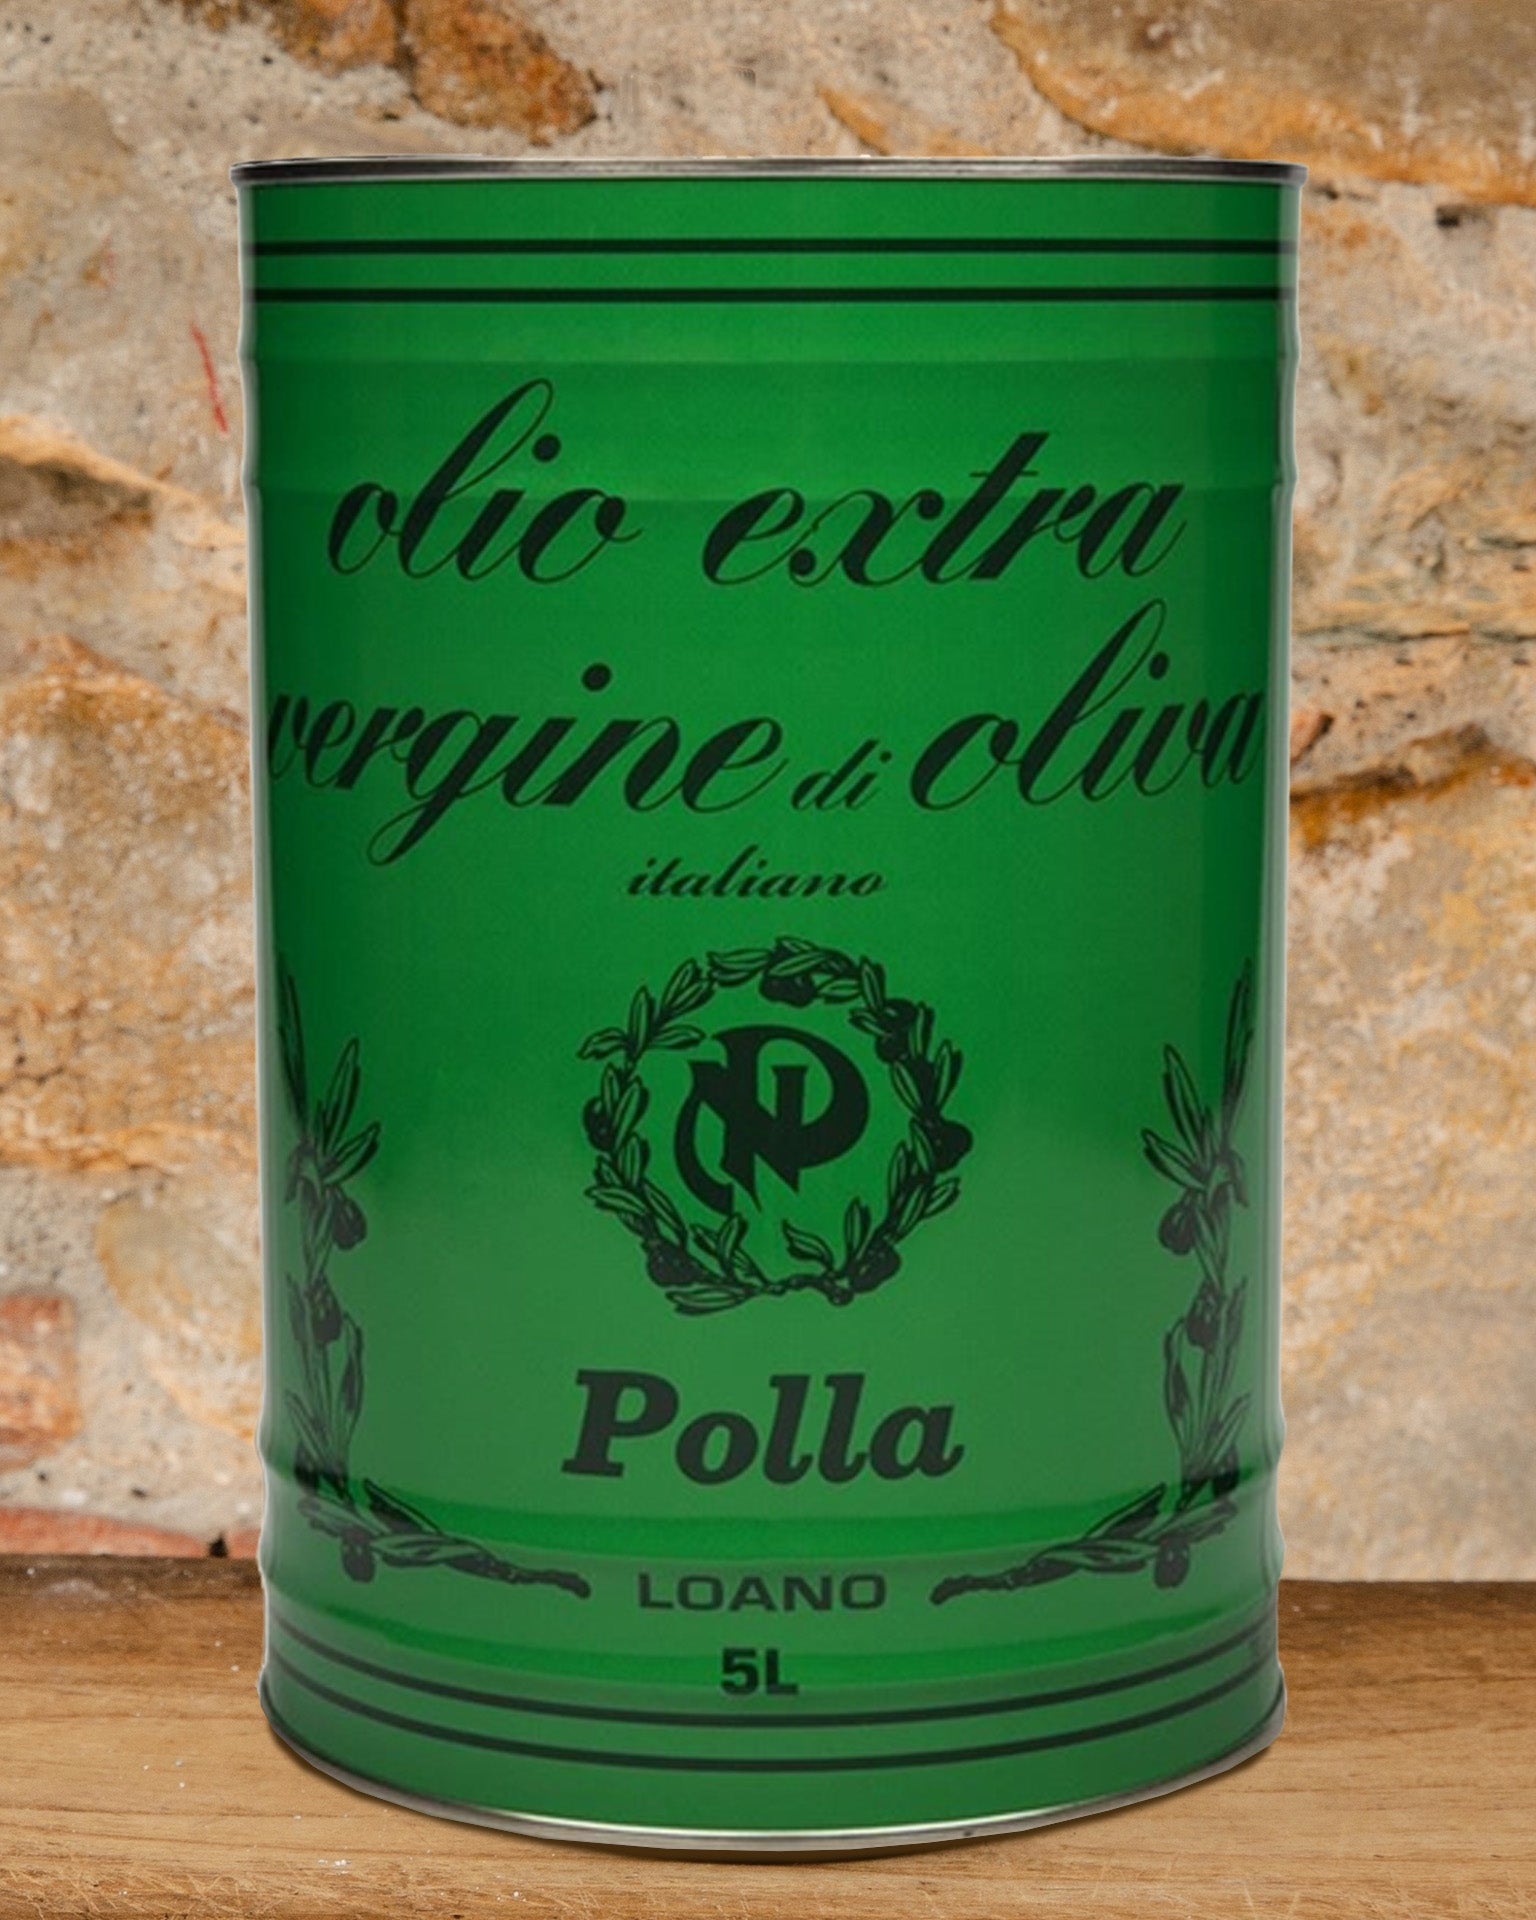 POLLA - EVO - Selezione cold pressed in tin 5Lt - 100% Italy